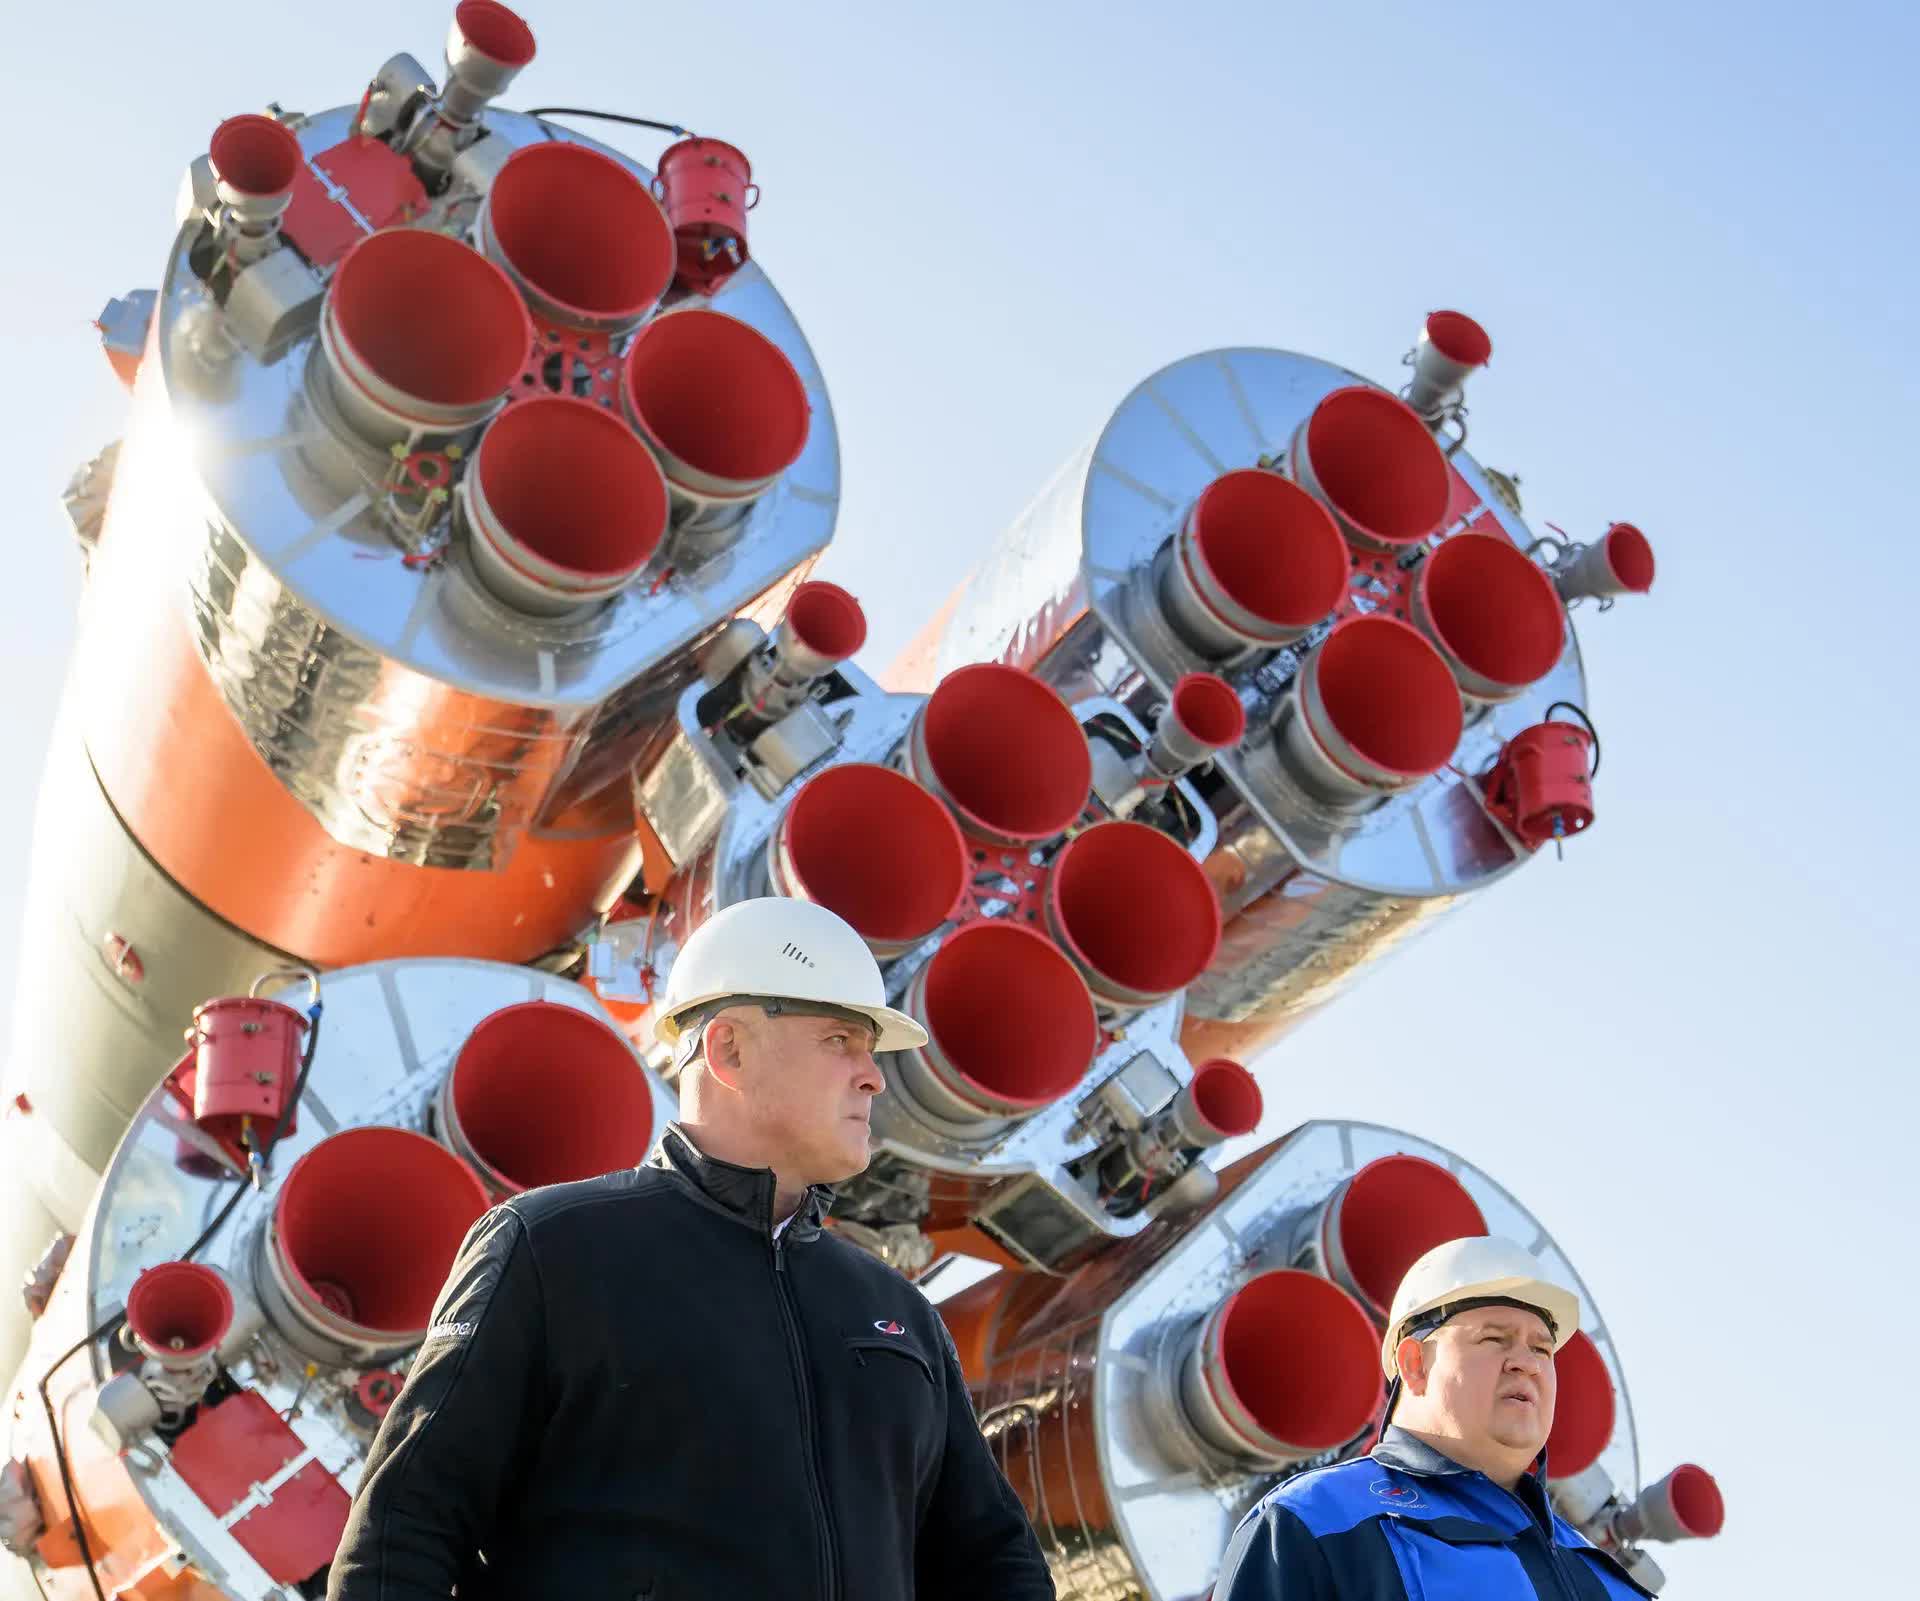 Bộ ảnh quyền lực: Nga nâng tên lửa Soyuz lên bệ, sắp có chuyến bay lịch sử - Ảnh 4.